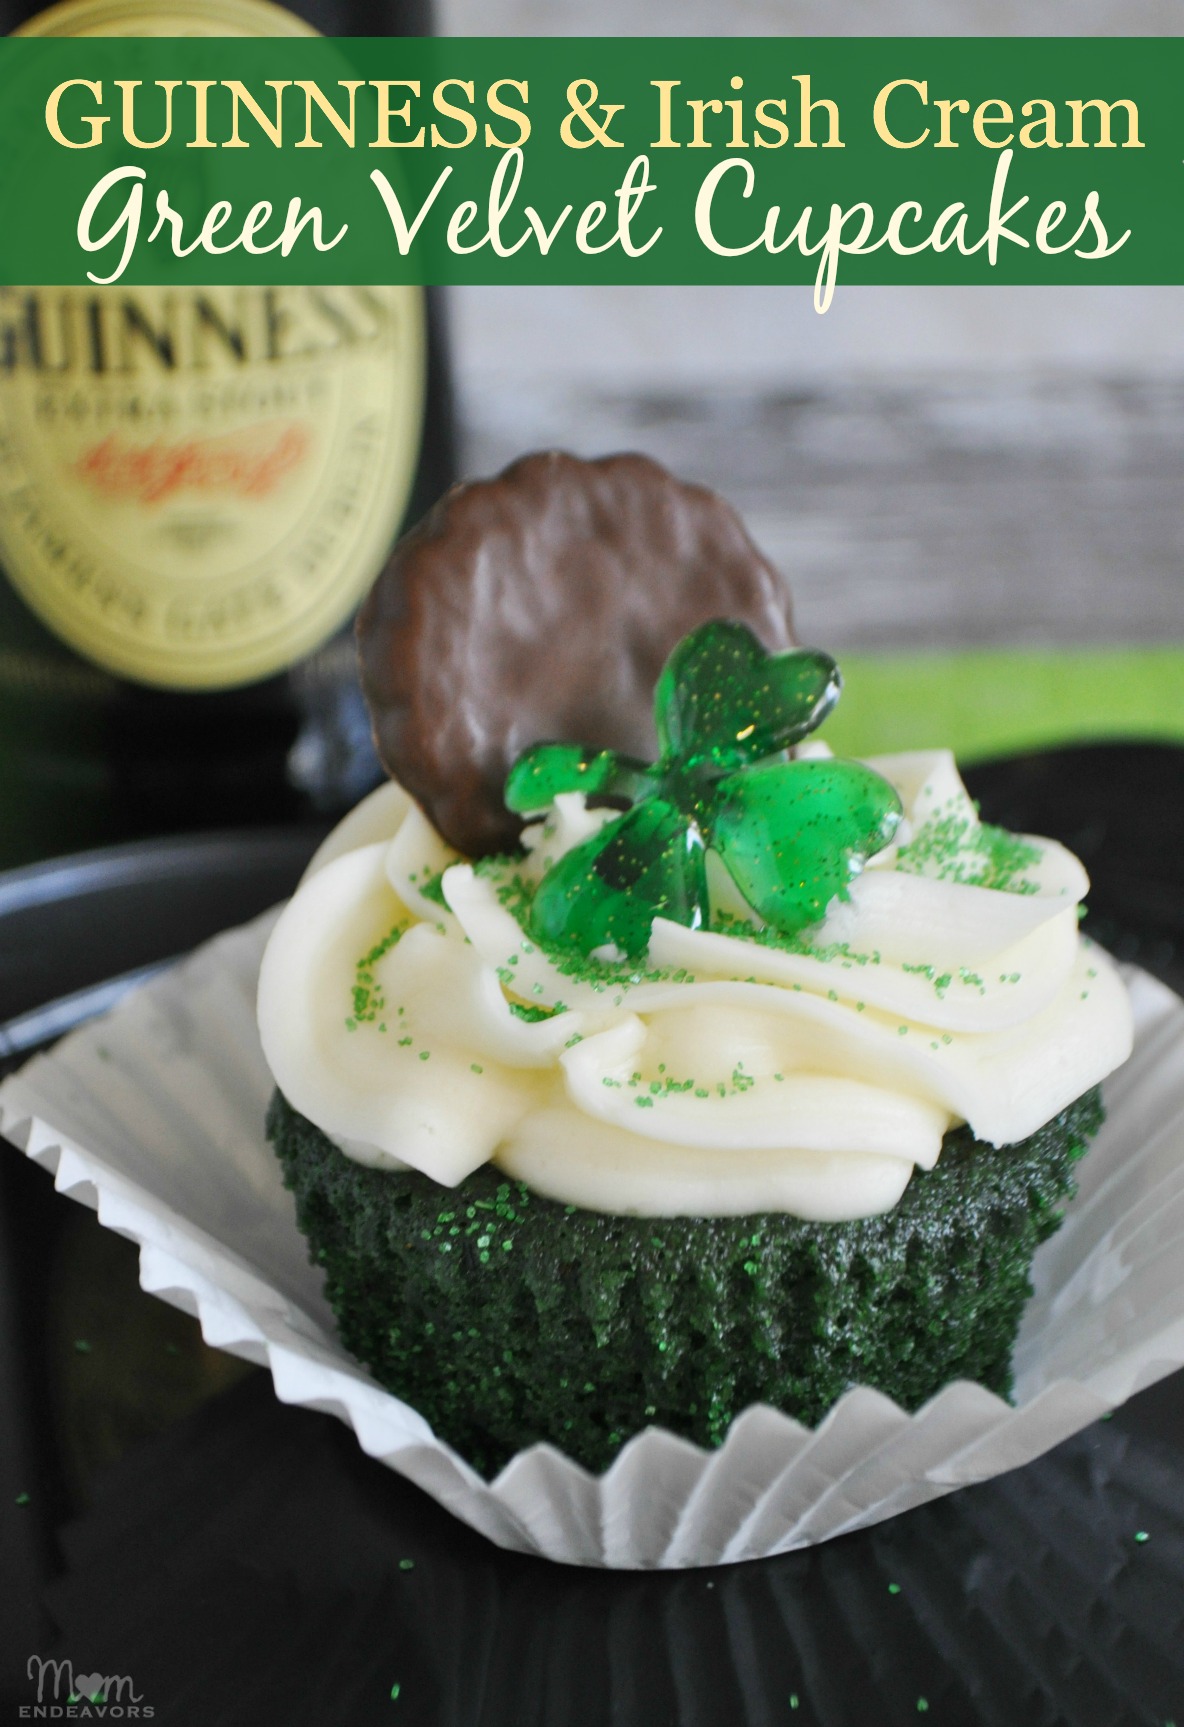 Guinness & Irish Cream Green Velvet Cupcakes